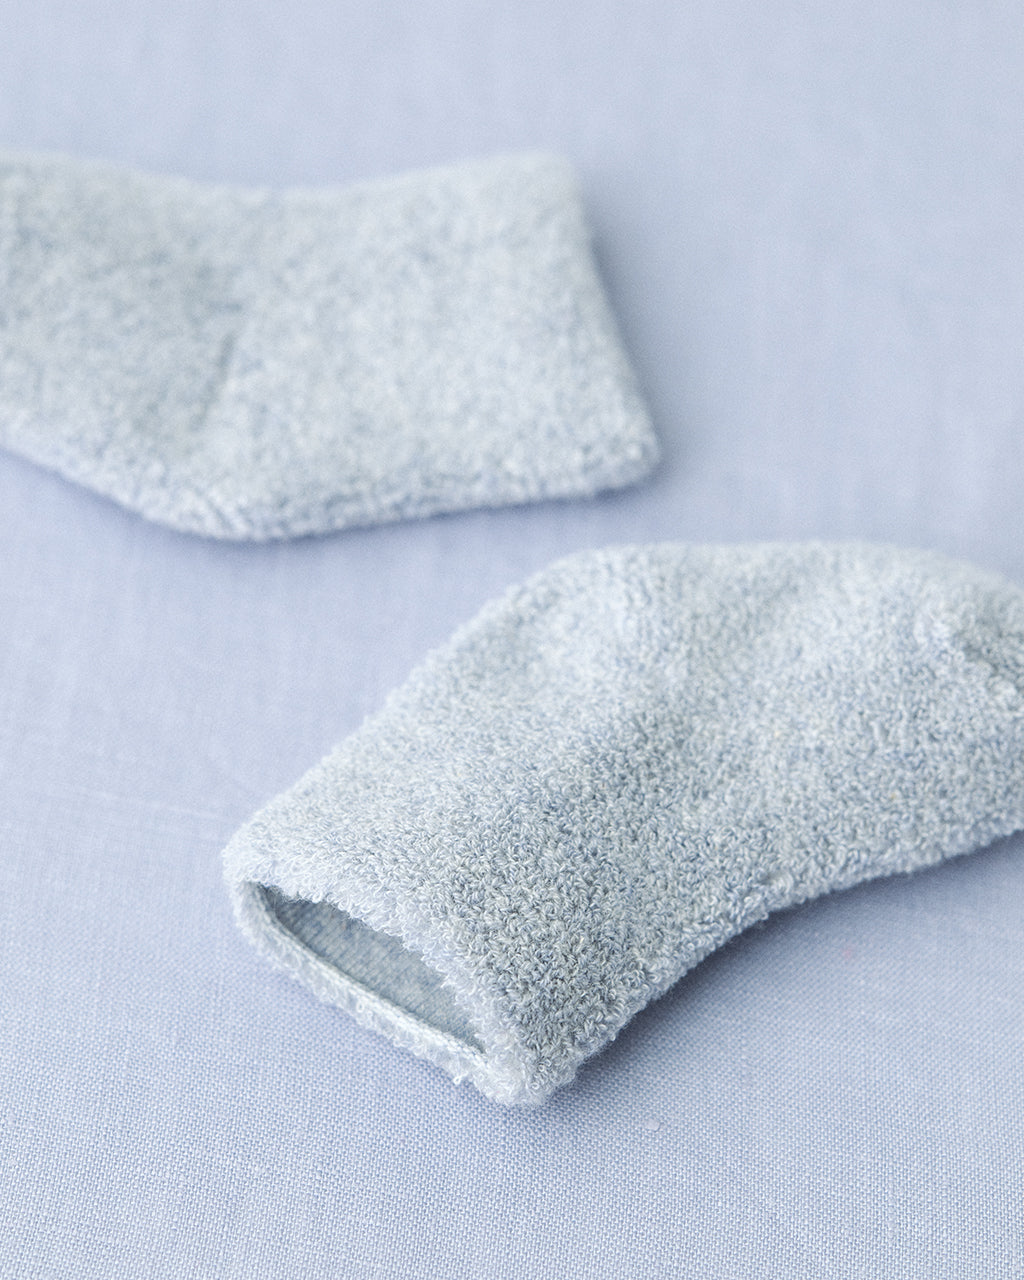 Baby Pile Socks: Blue